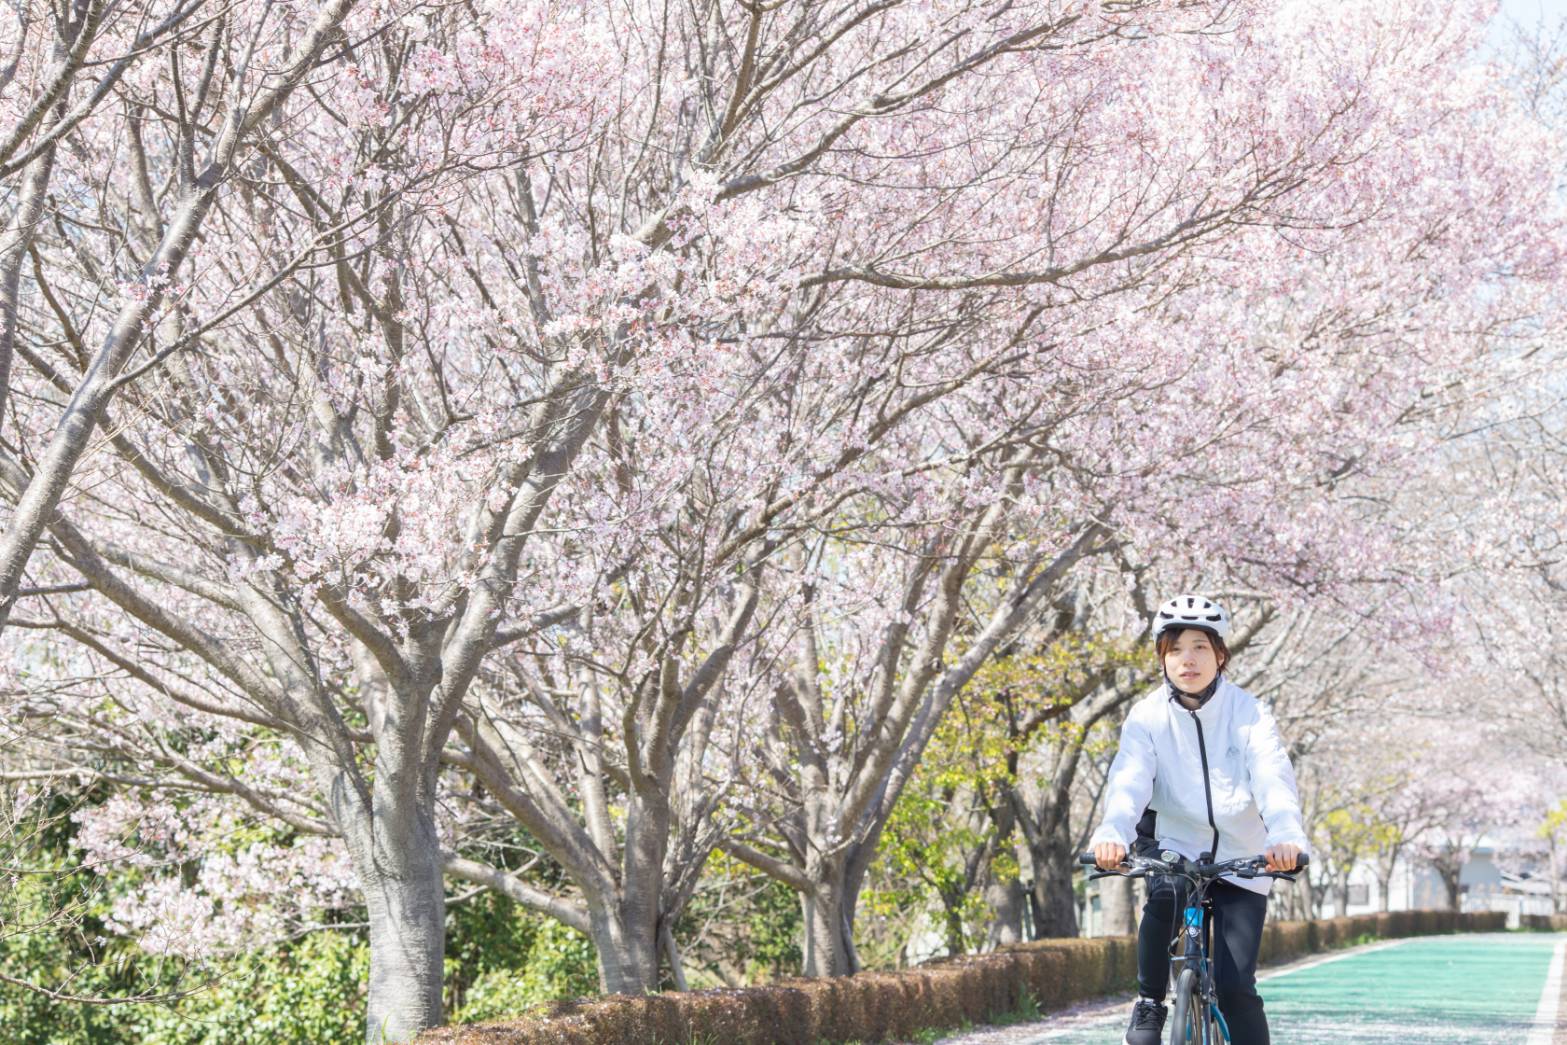 เส้นทางจักรยาน Kasumigaura Forest ในเมืองสึคุบะ จังหวัดอิบารากิ ประเทศญี่ปุ่น